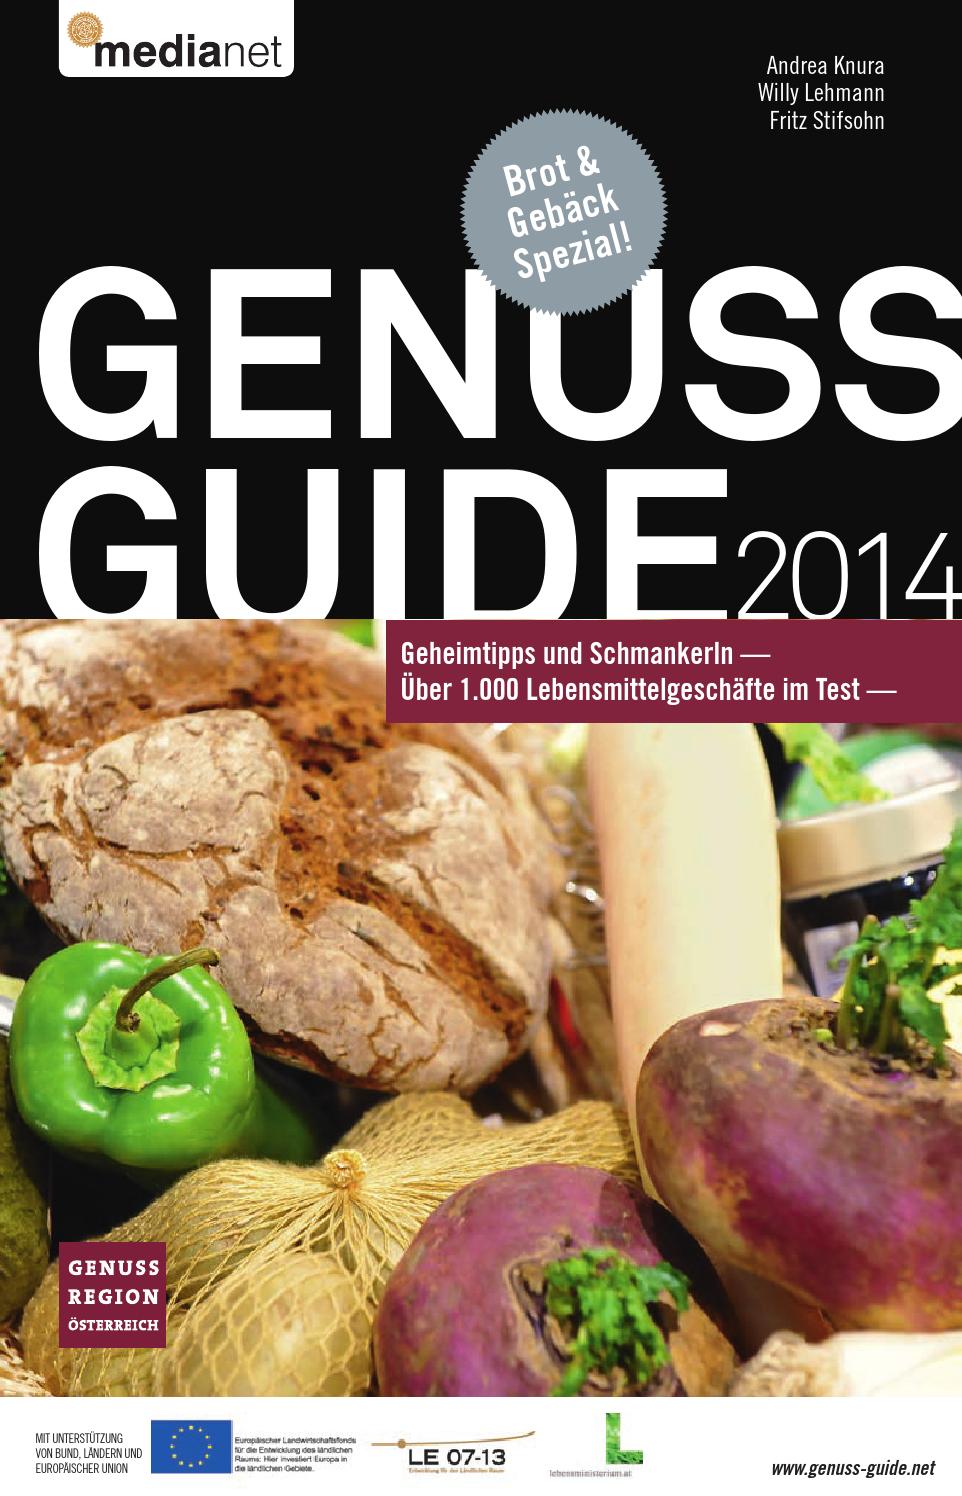 Schöne Terrassen Und Gartengestaltung Inspirierend Genuss Guide 2014 by Medianet issuu